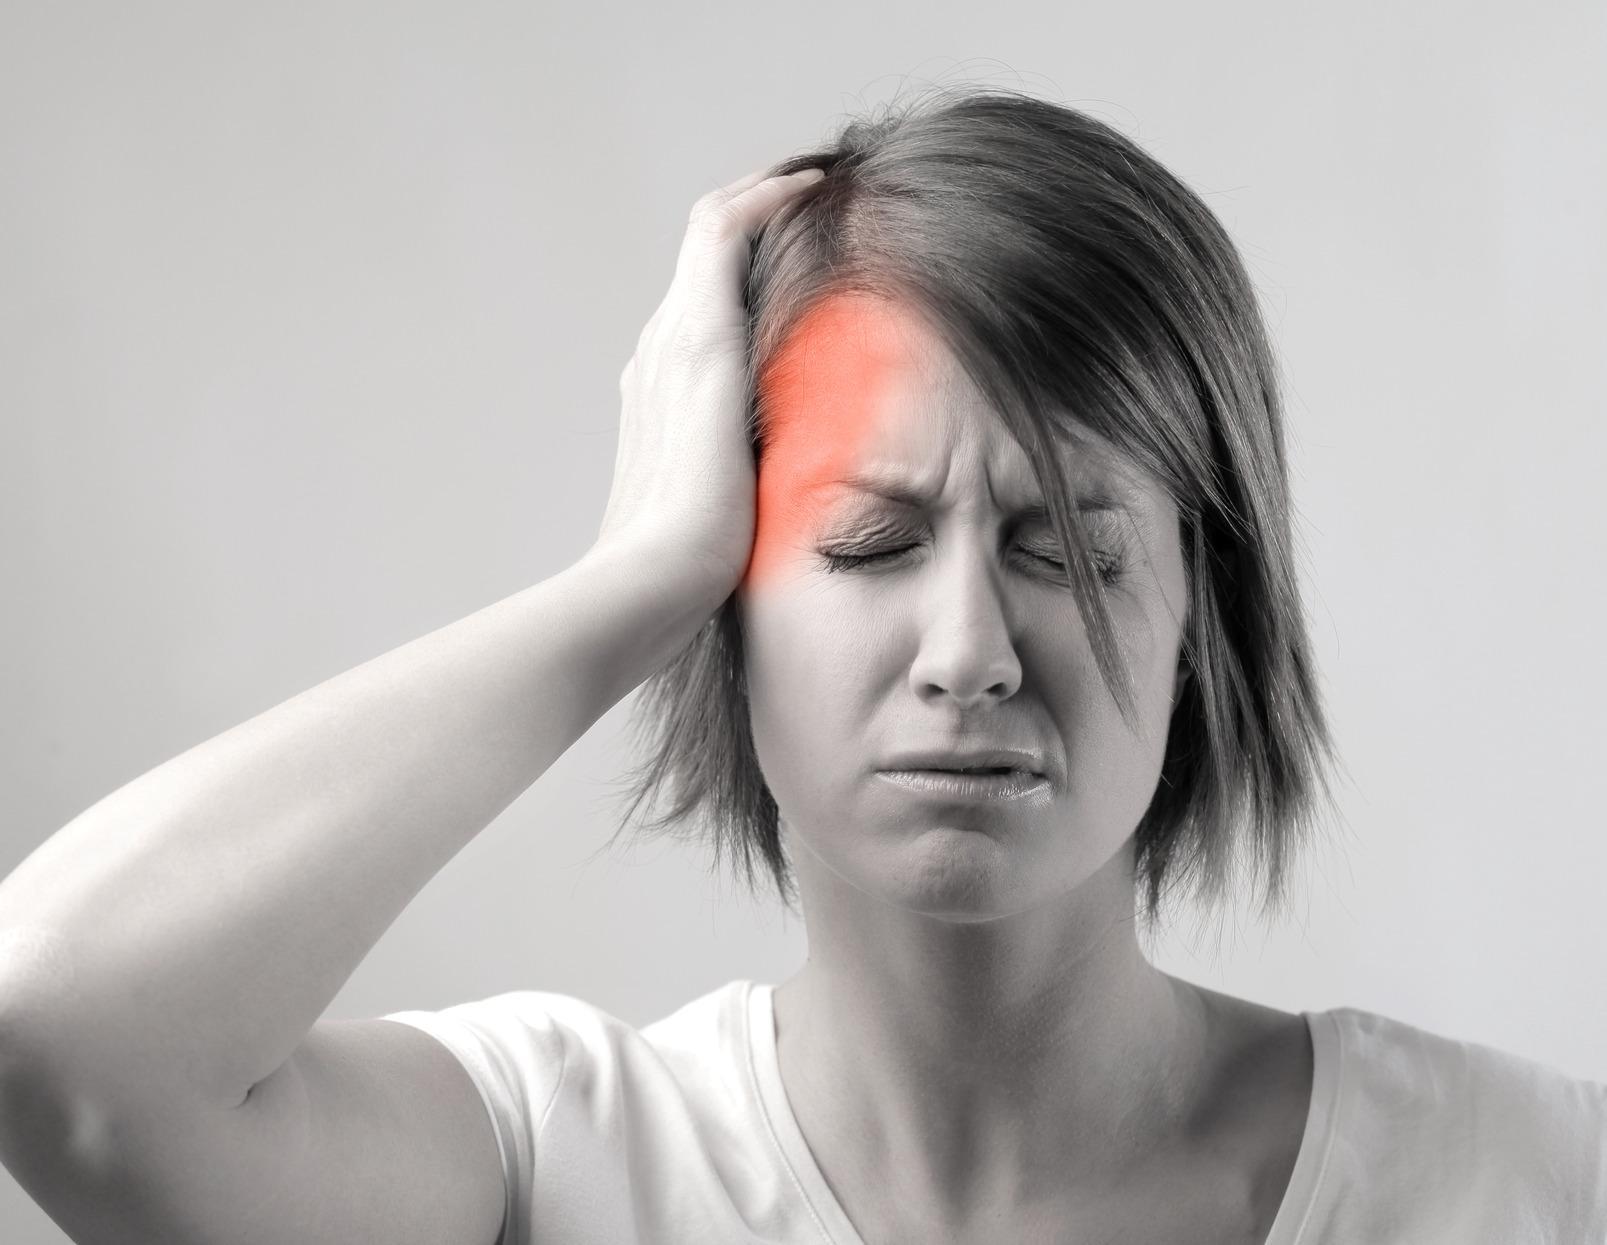 पुरुषों की तुलना में महिलाओं को ज्यादा सिरदर्द से पीड़ित होने की संभावना होती है ,जानिए